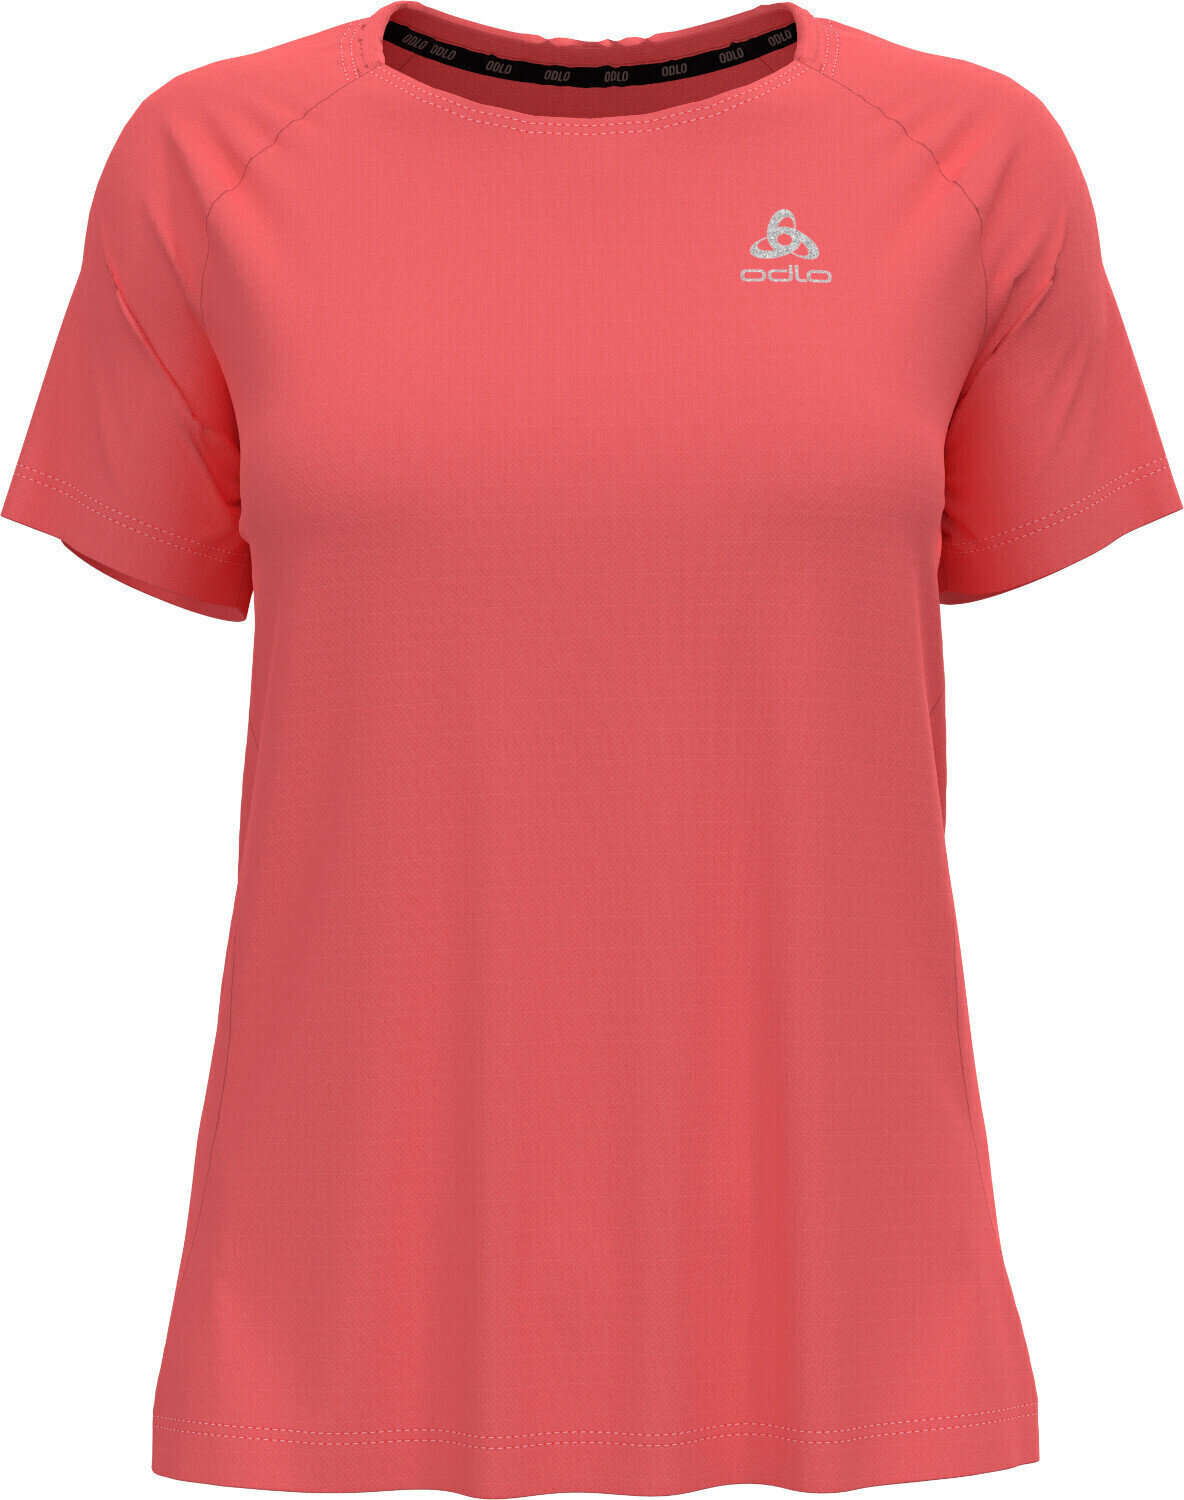 Koszulka do biegania z krótkim rękawem
 Odlo Essential T-Shirt Siesta L Koszulka do biegania z krótkim rękawem